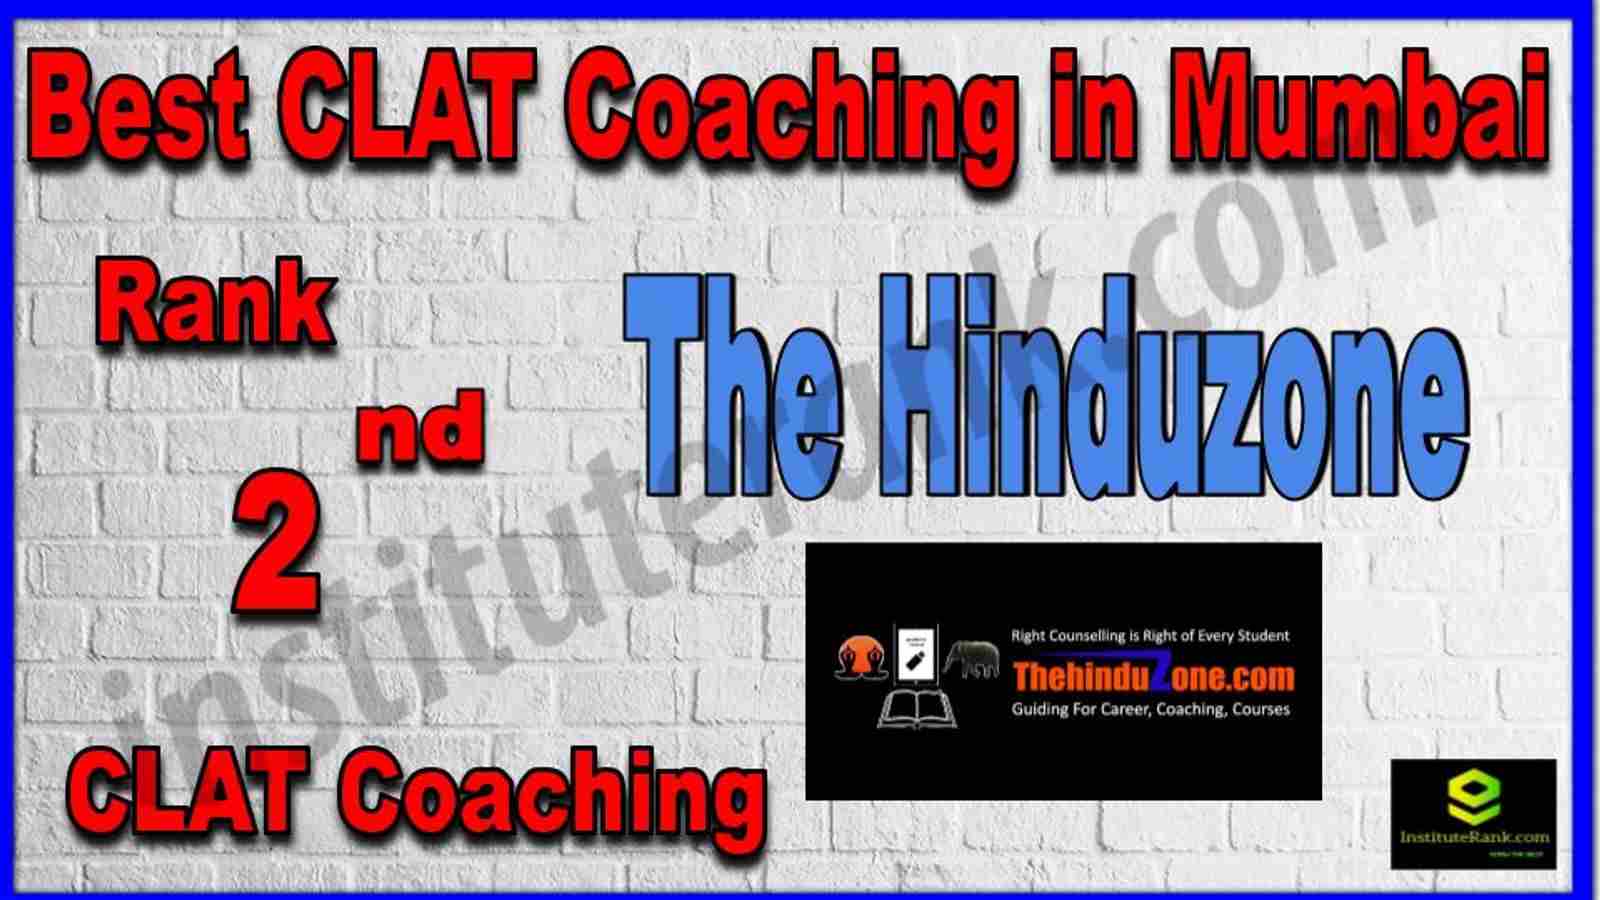 Rank 2nd Best Clat Coaching in Mumbai